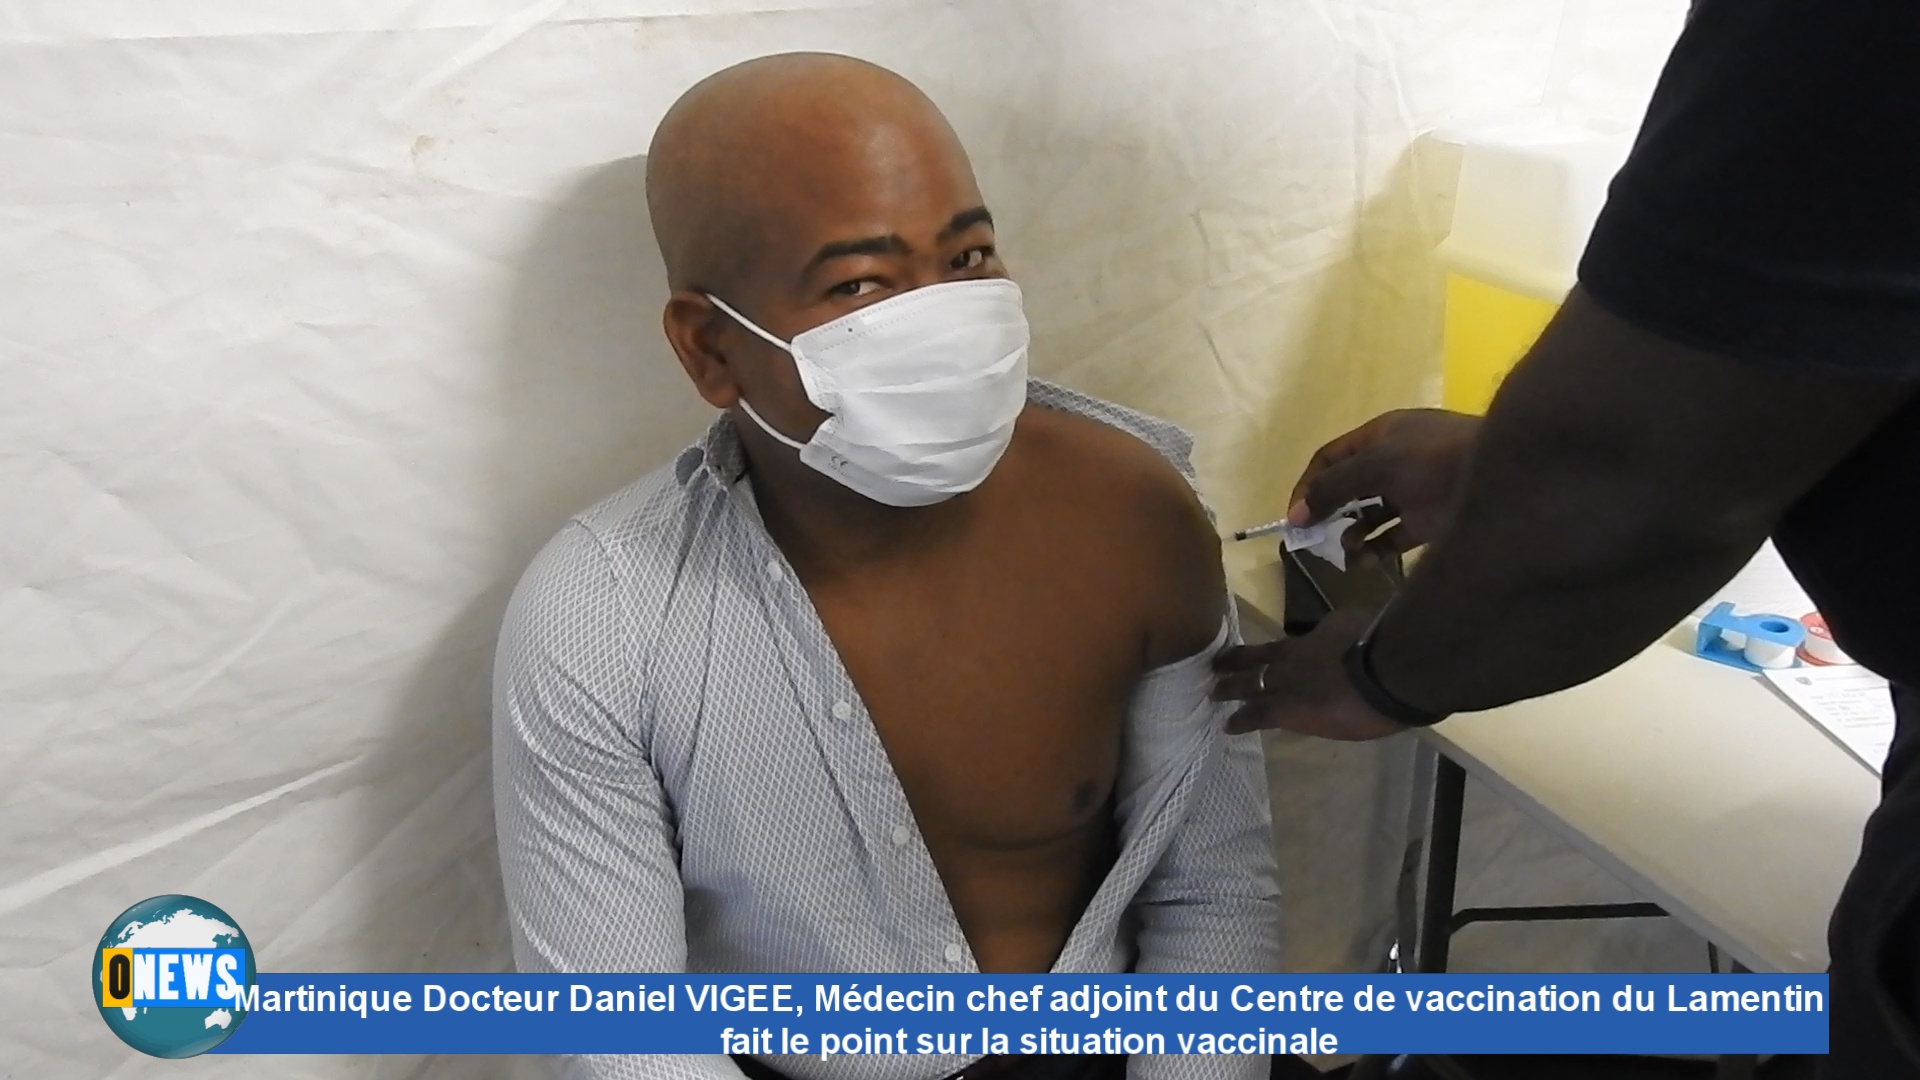 [Vidéo] Martinique. Docteur Daniel VIGEE fait le point sur la situation vaccinale